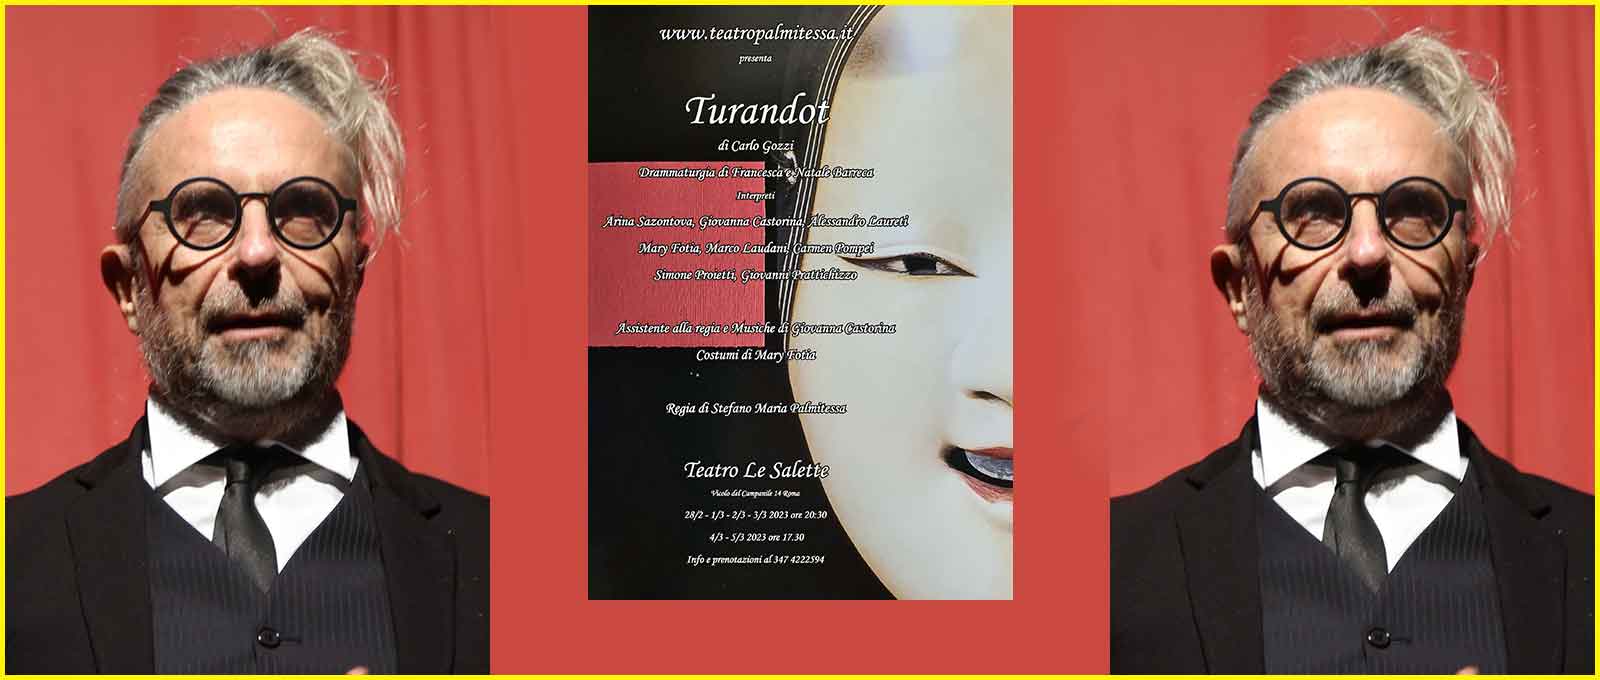 Teatro Le Salette “Turandot”